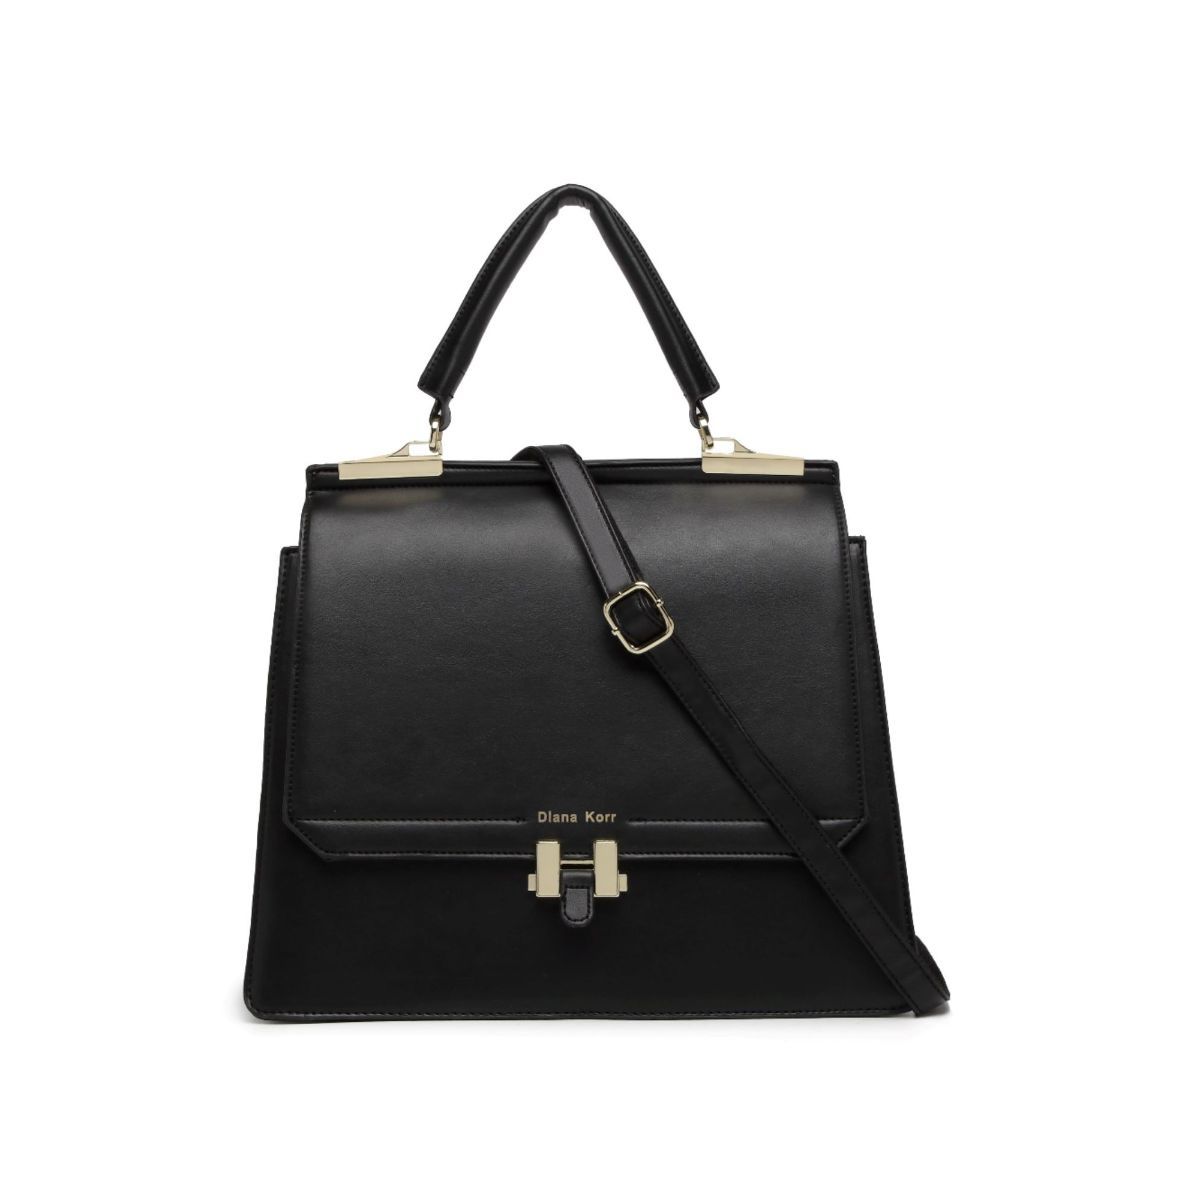 Diana Korr Black Solid Faux Leather Handbag